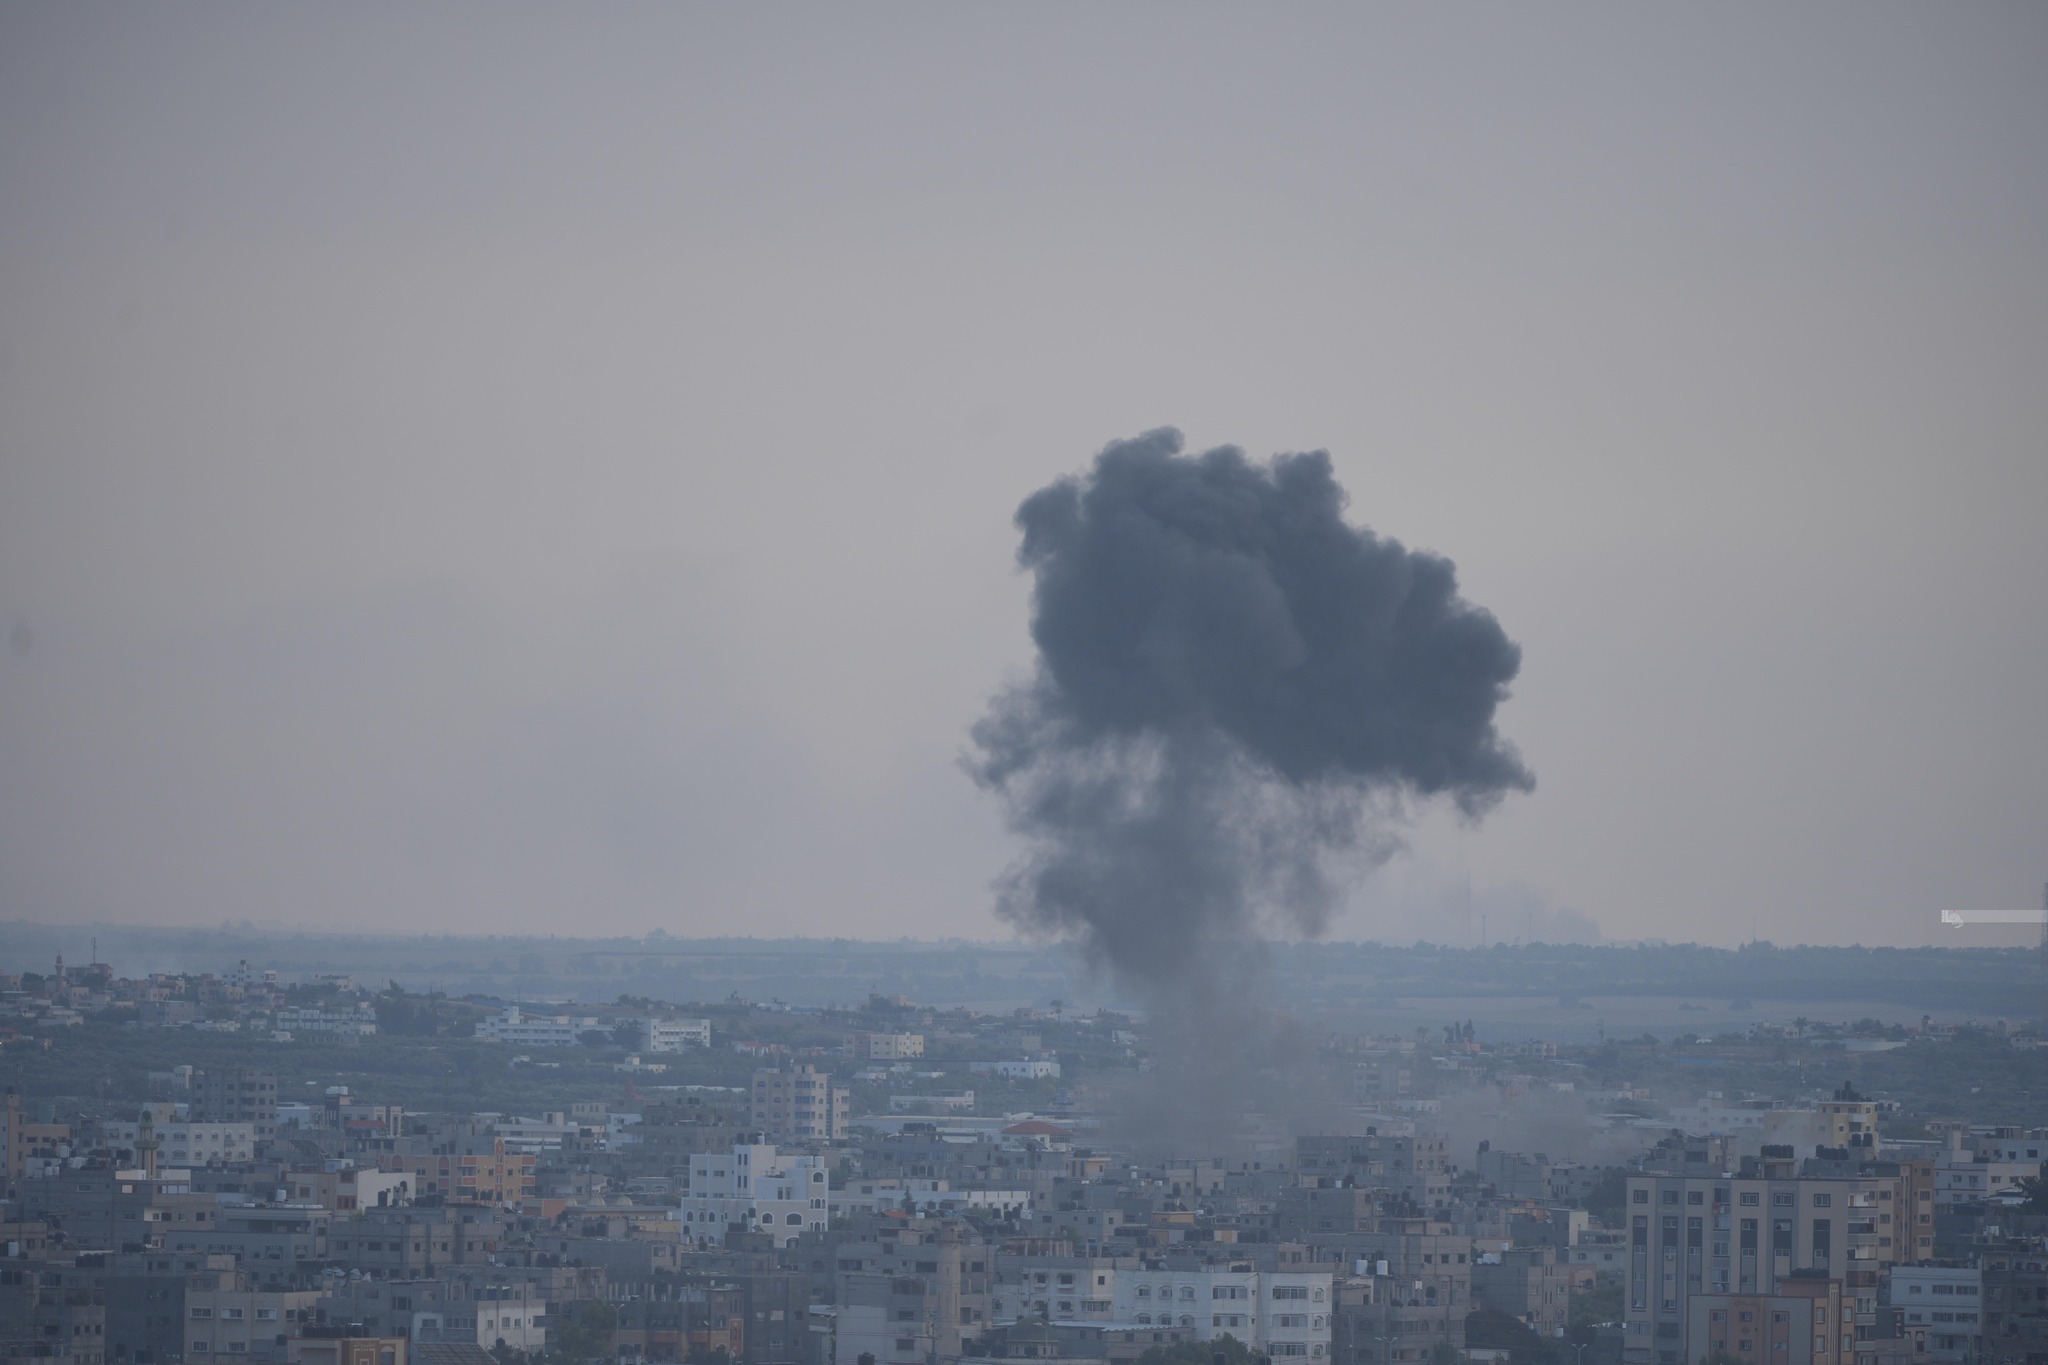 Israeli airstrike on school in Gazan refugee camp kills at least 15